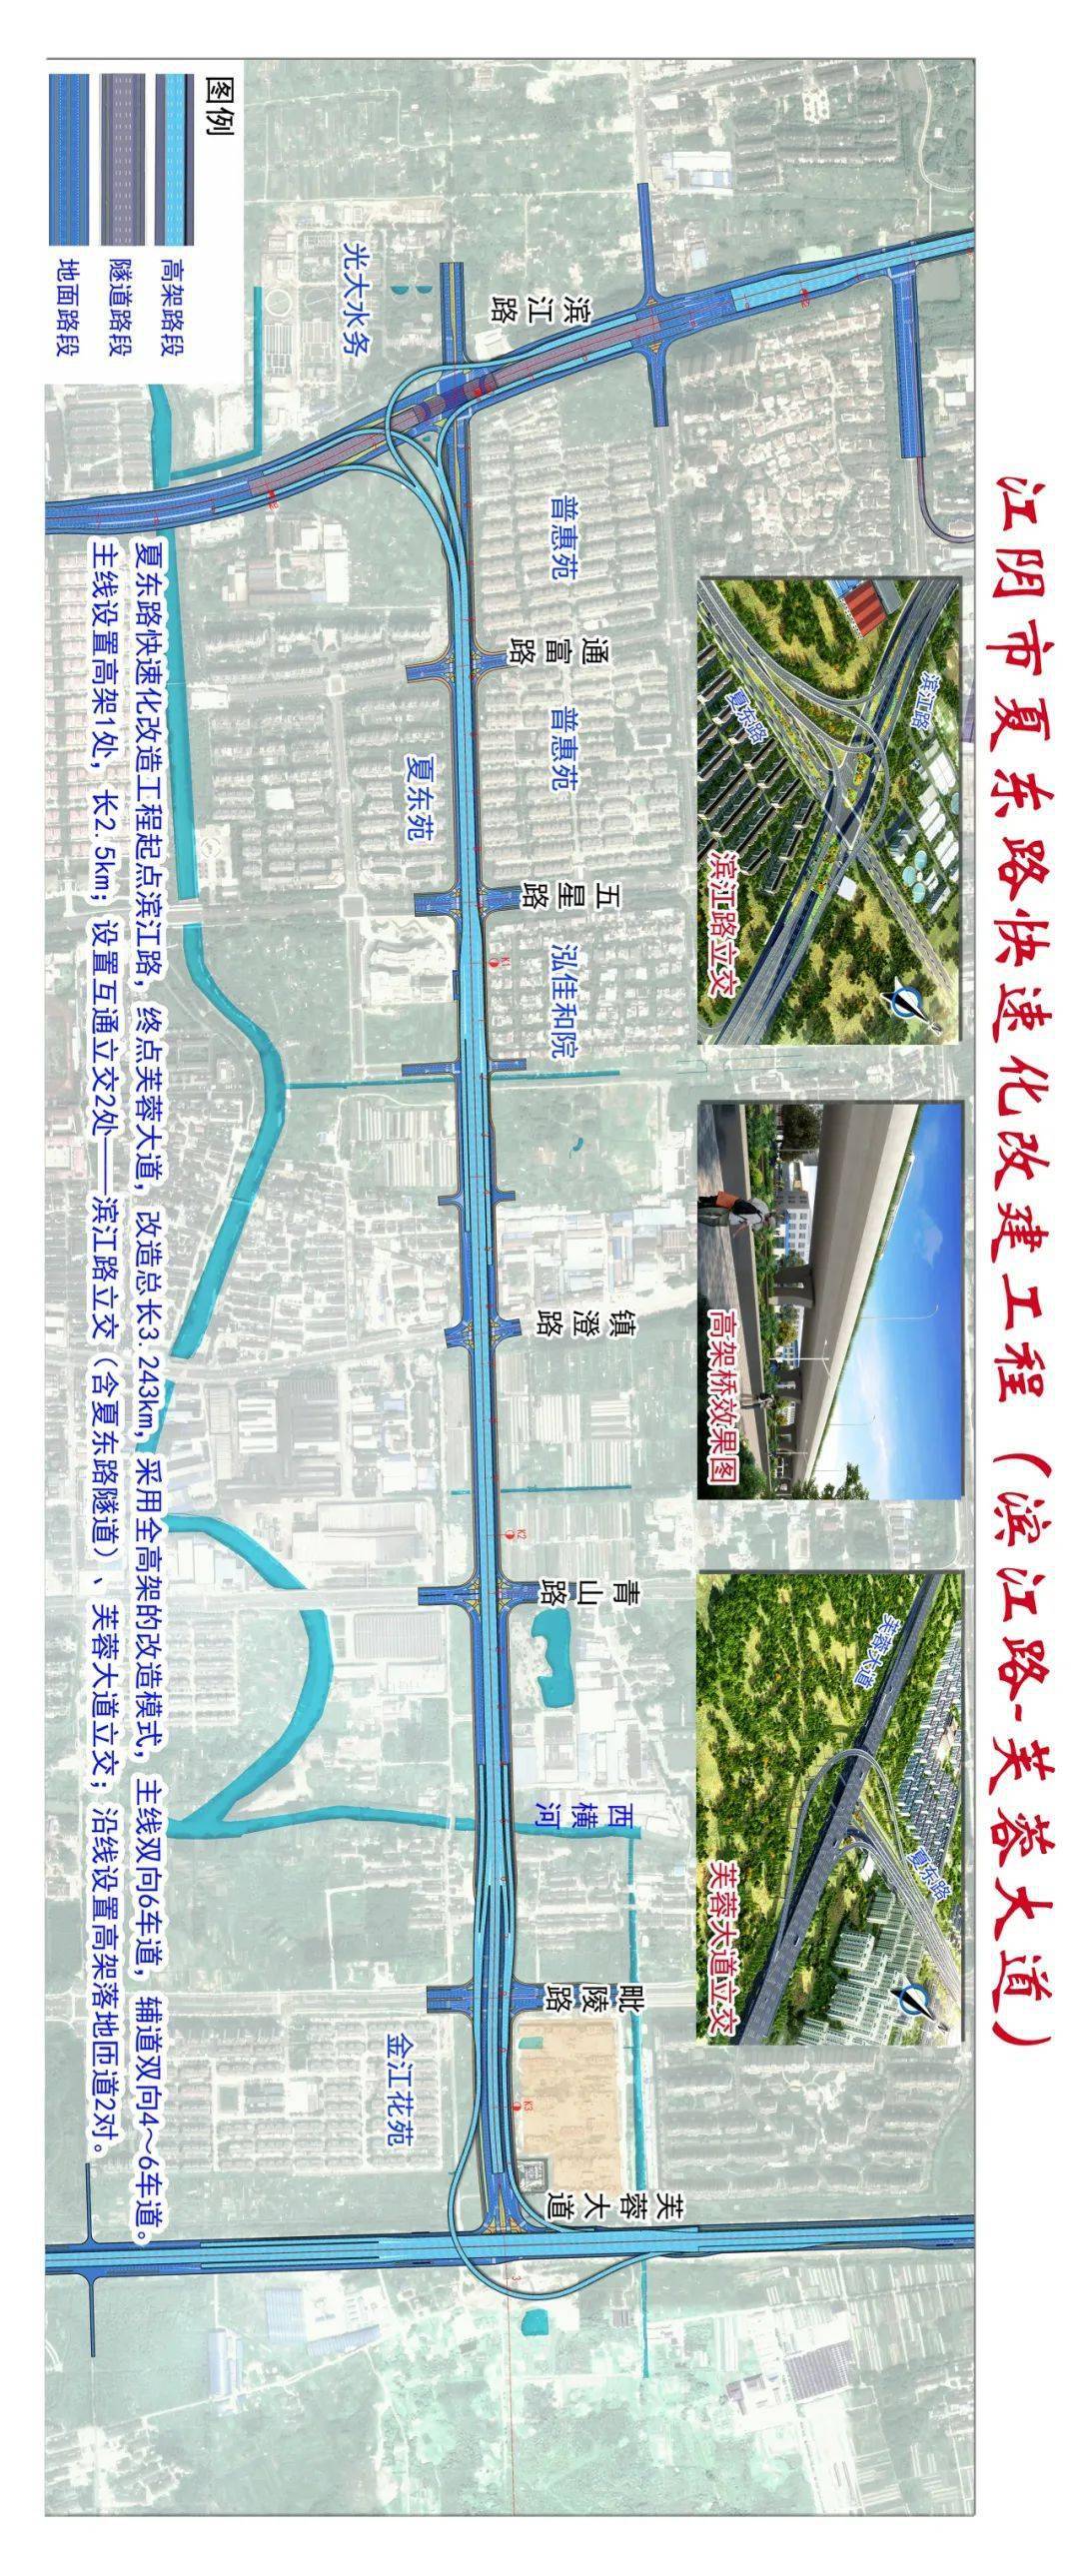 江阴市快速内环的西线,其快速化改造有利于构建完善城市快速路网体系